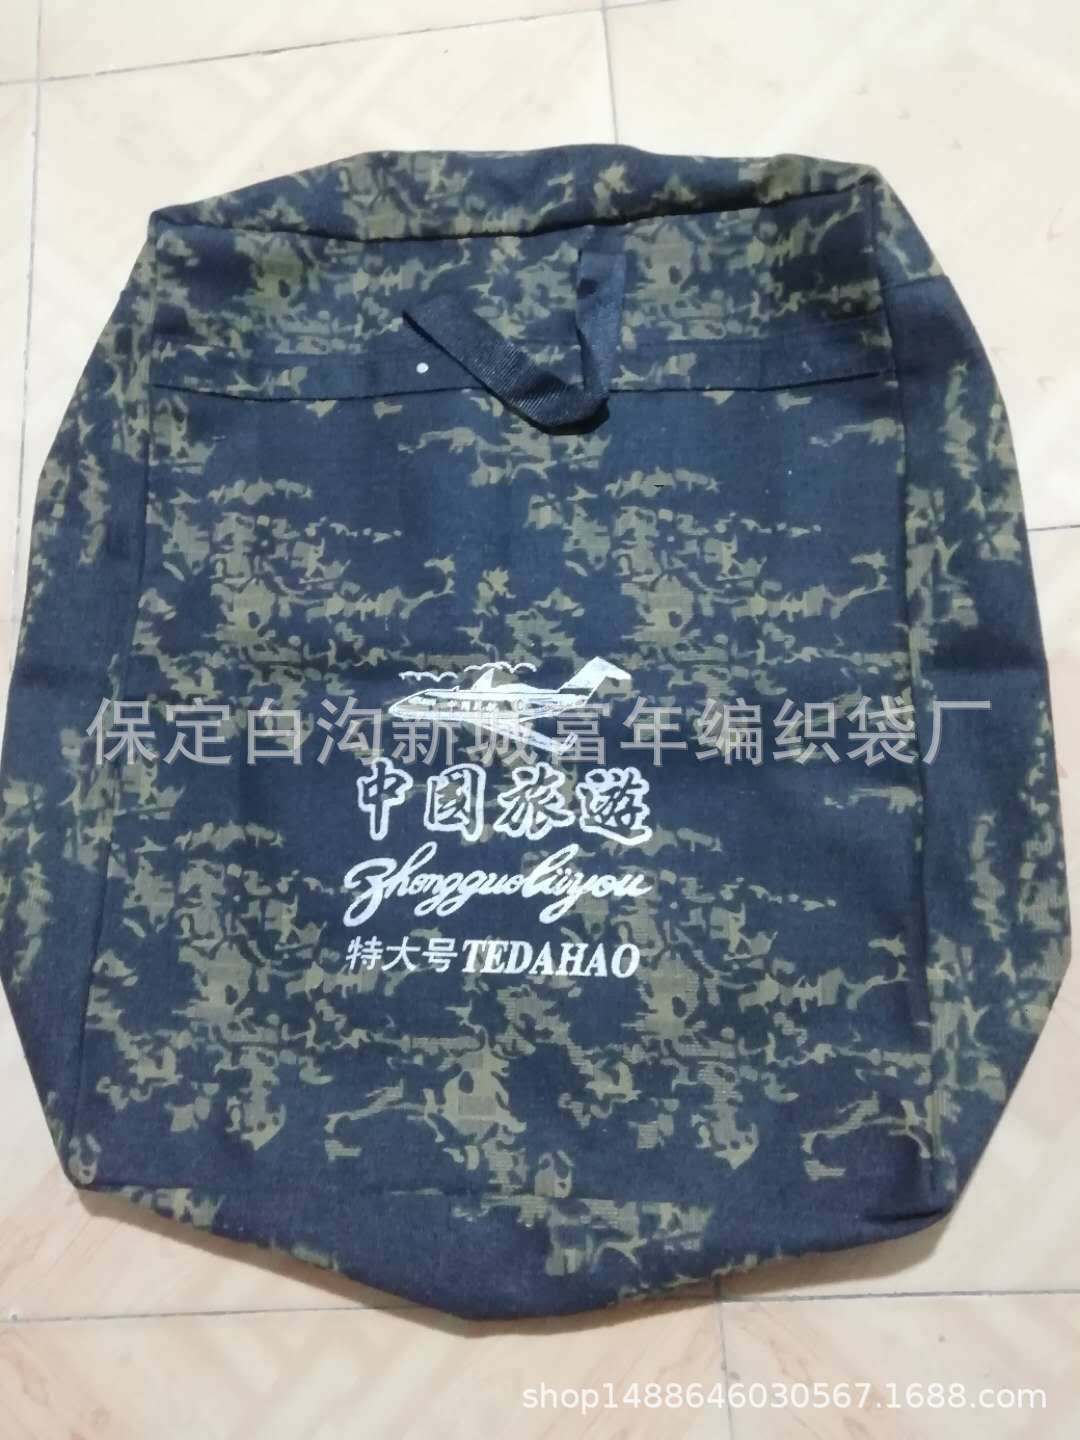 中国旅游帆布棉被包装行李收纳袋 手提 铆钉加固旅行牛仔双肩背包|ms